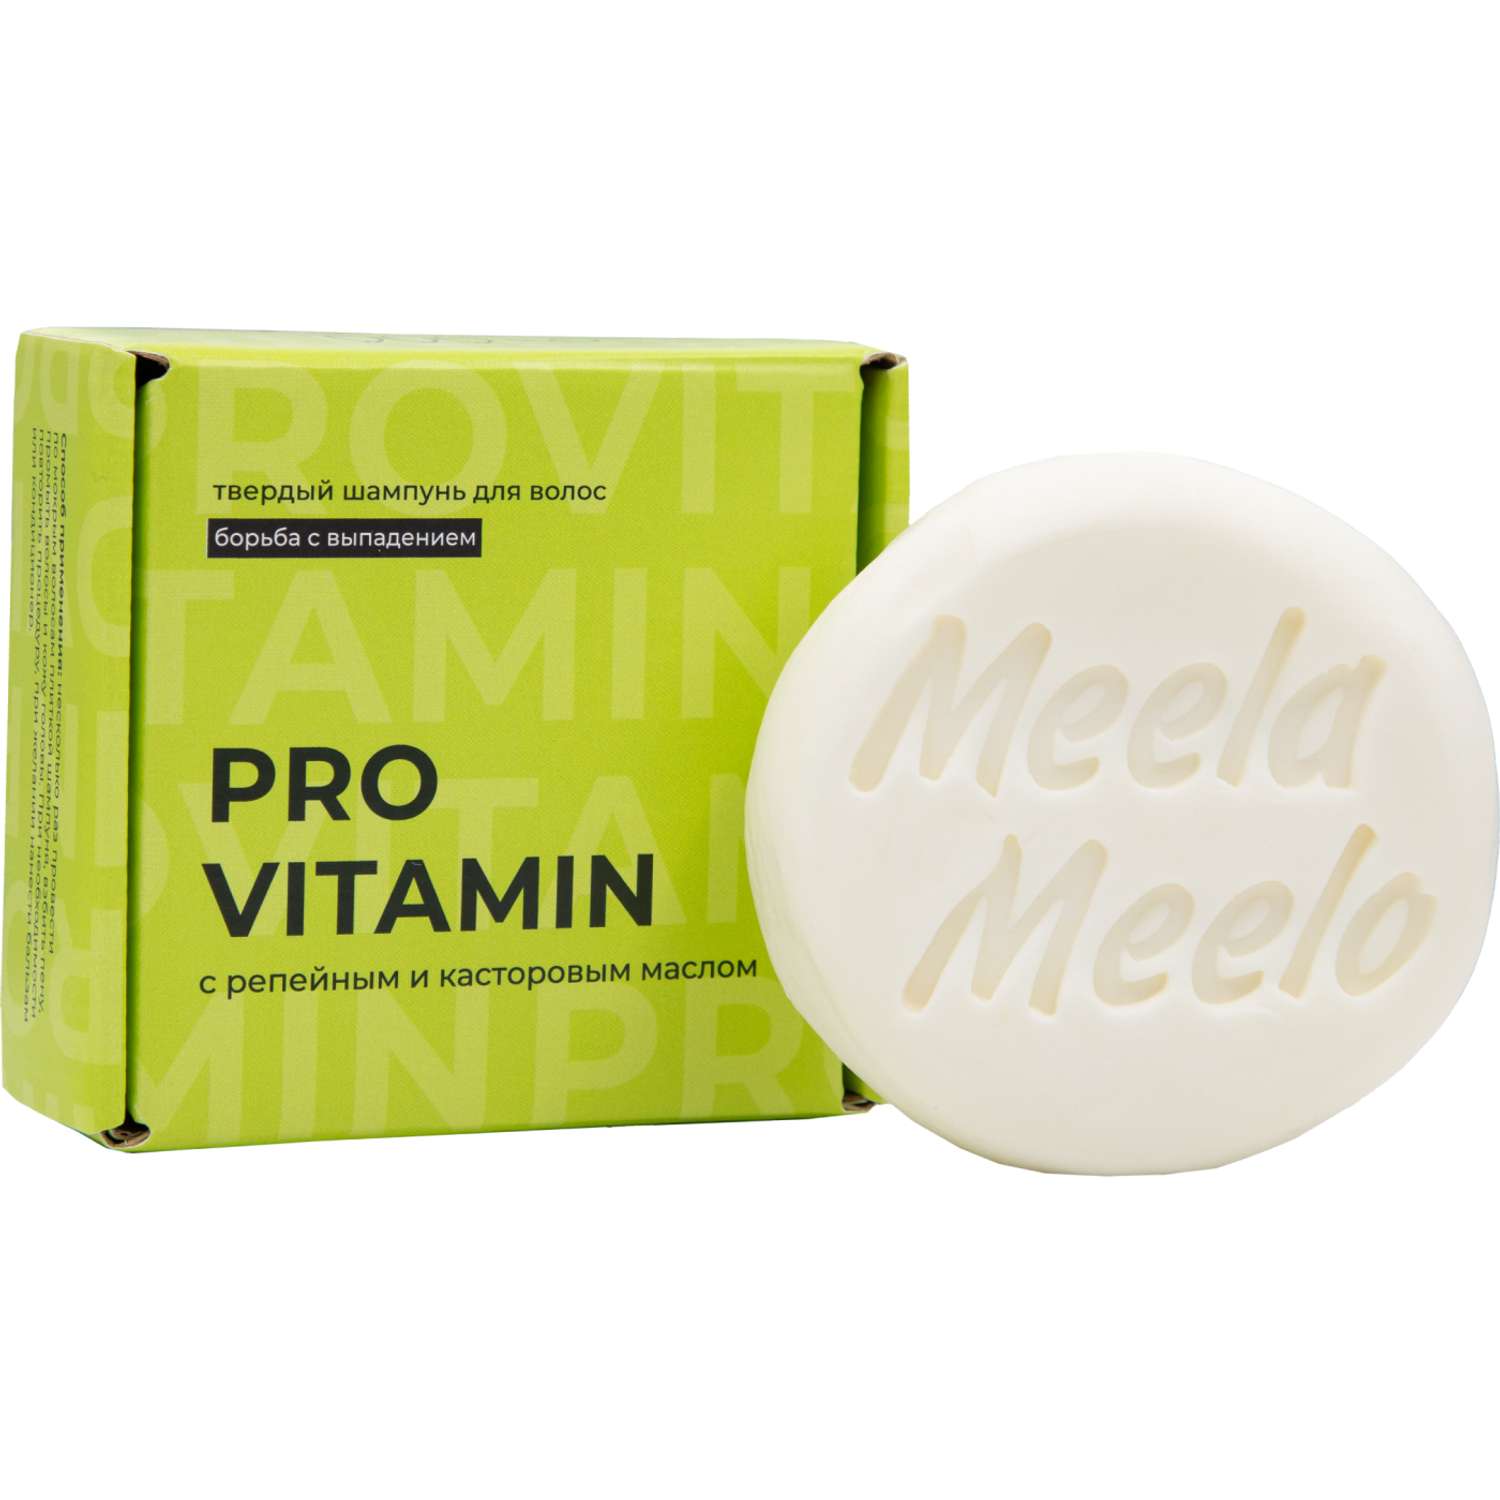 Шампунь Meela Meelo Pro vitamin 85 гр - фото 1